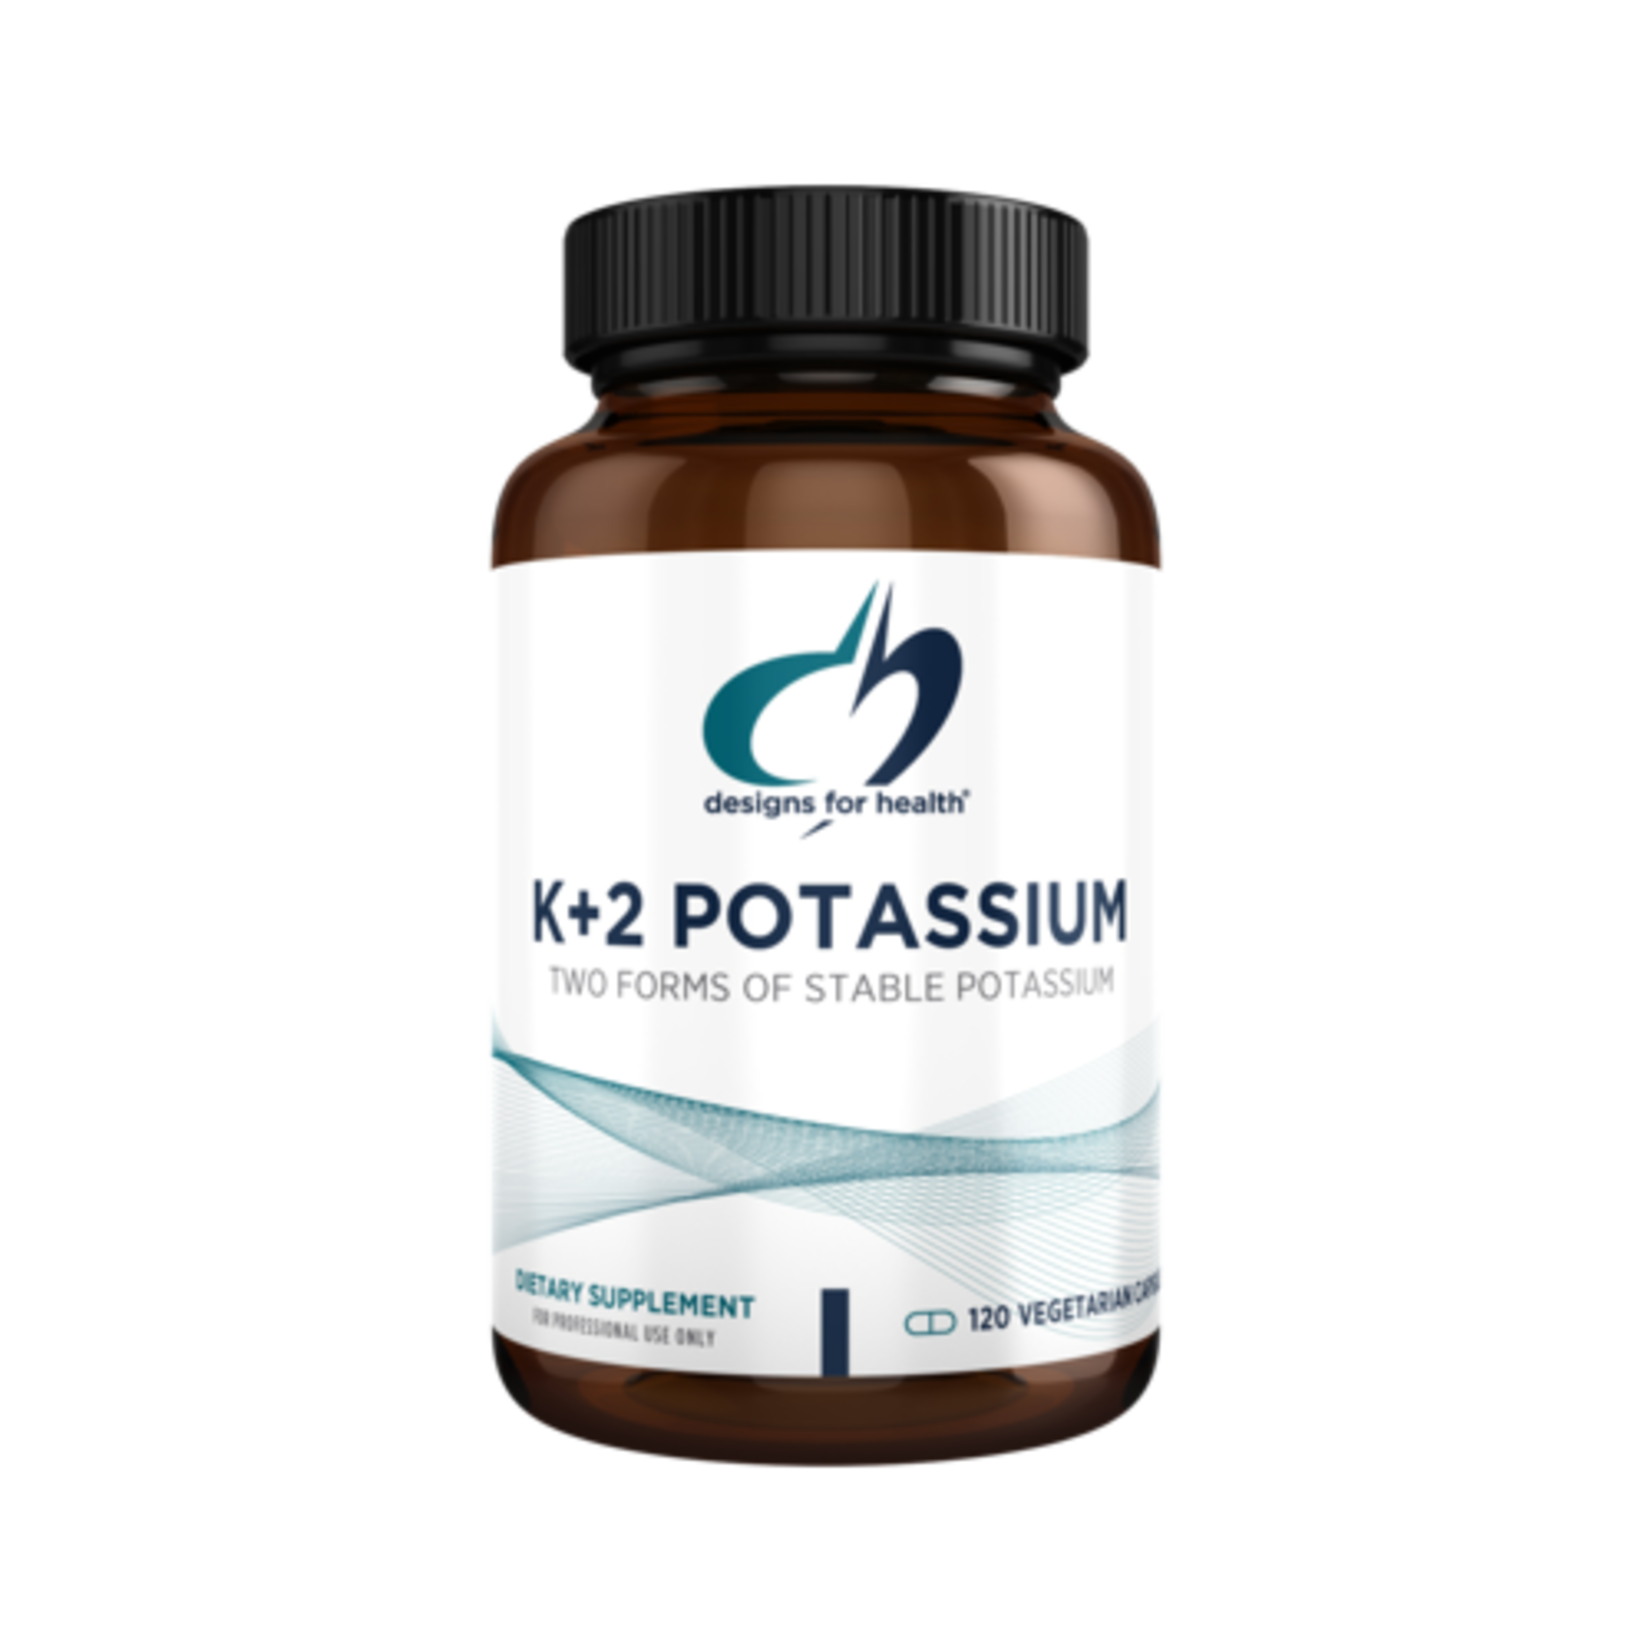 K+2 Potassium 300mg (Designs for Health)